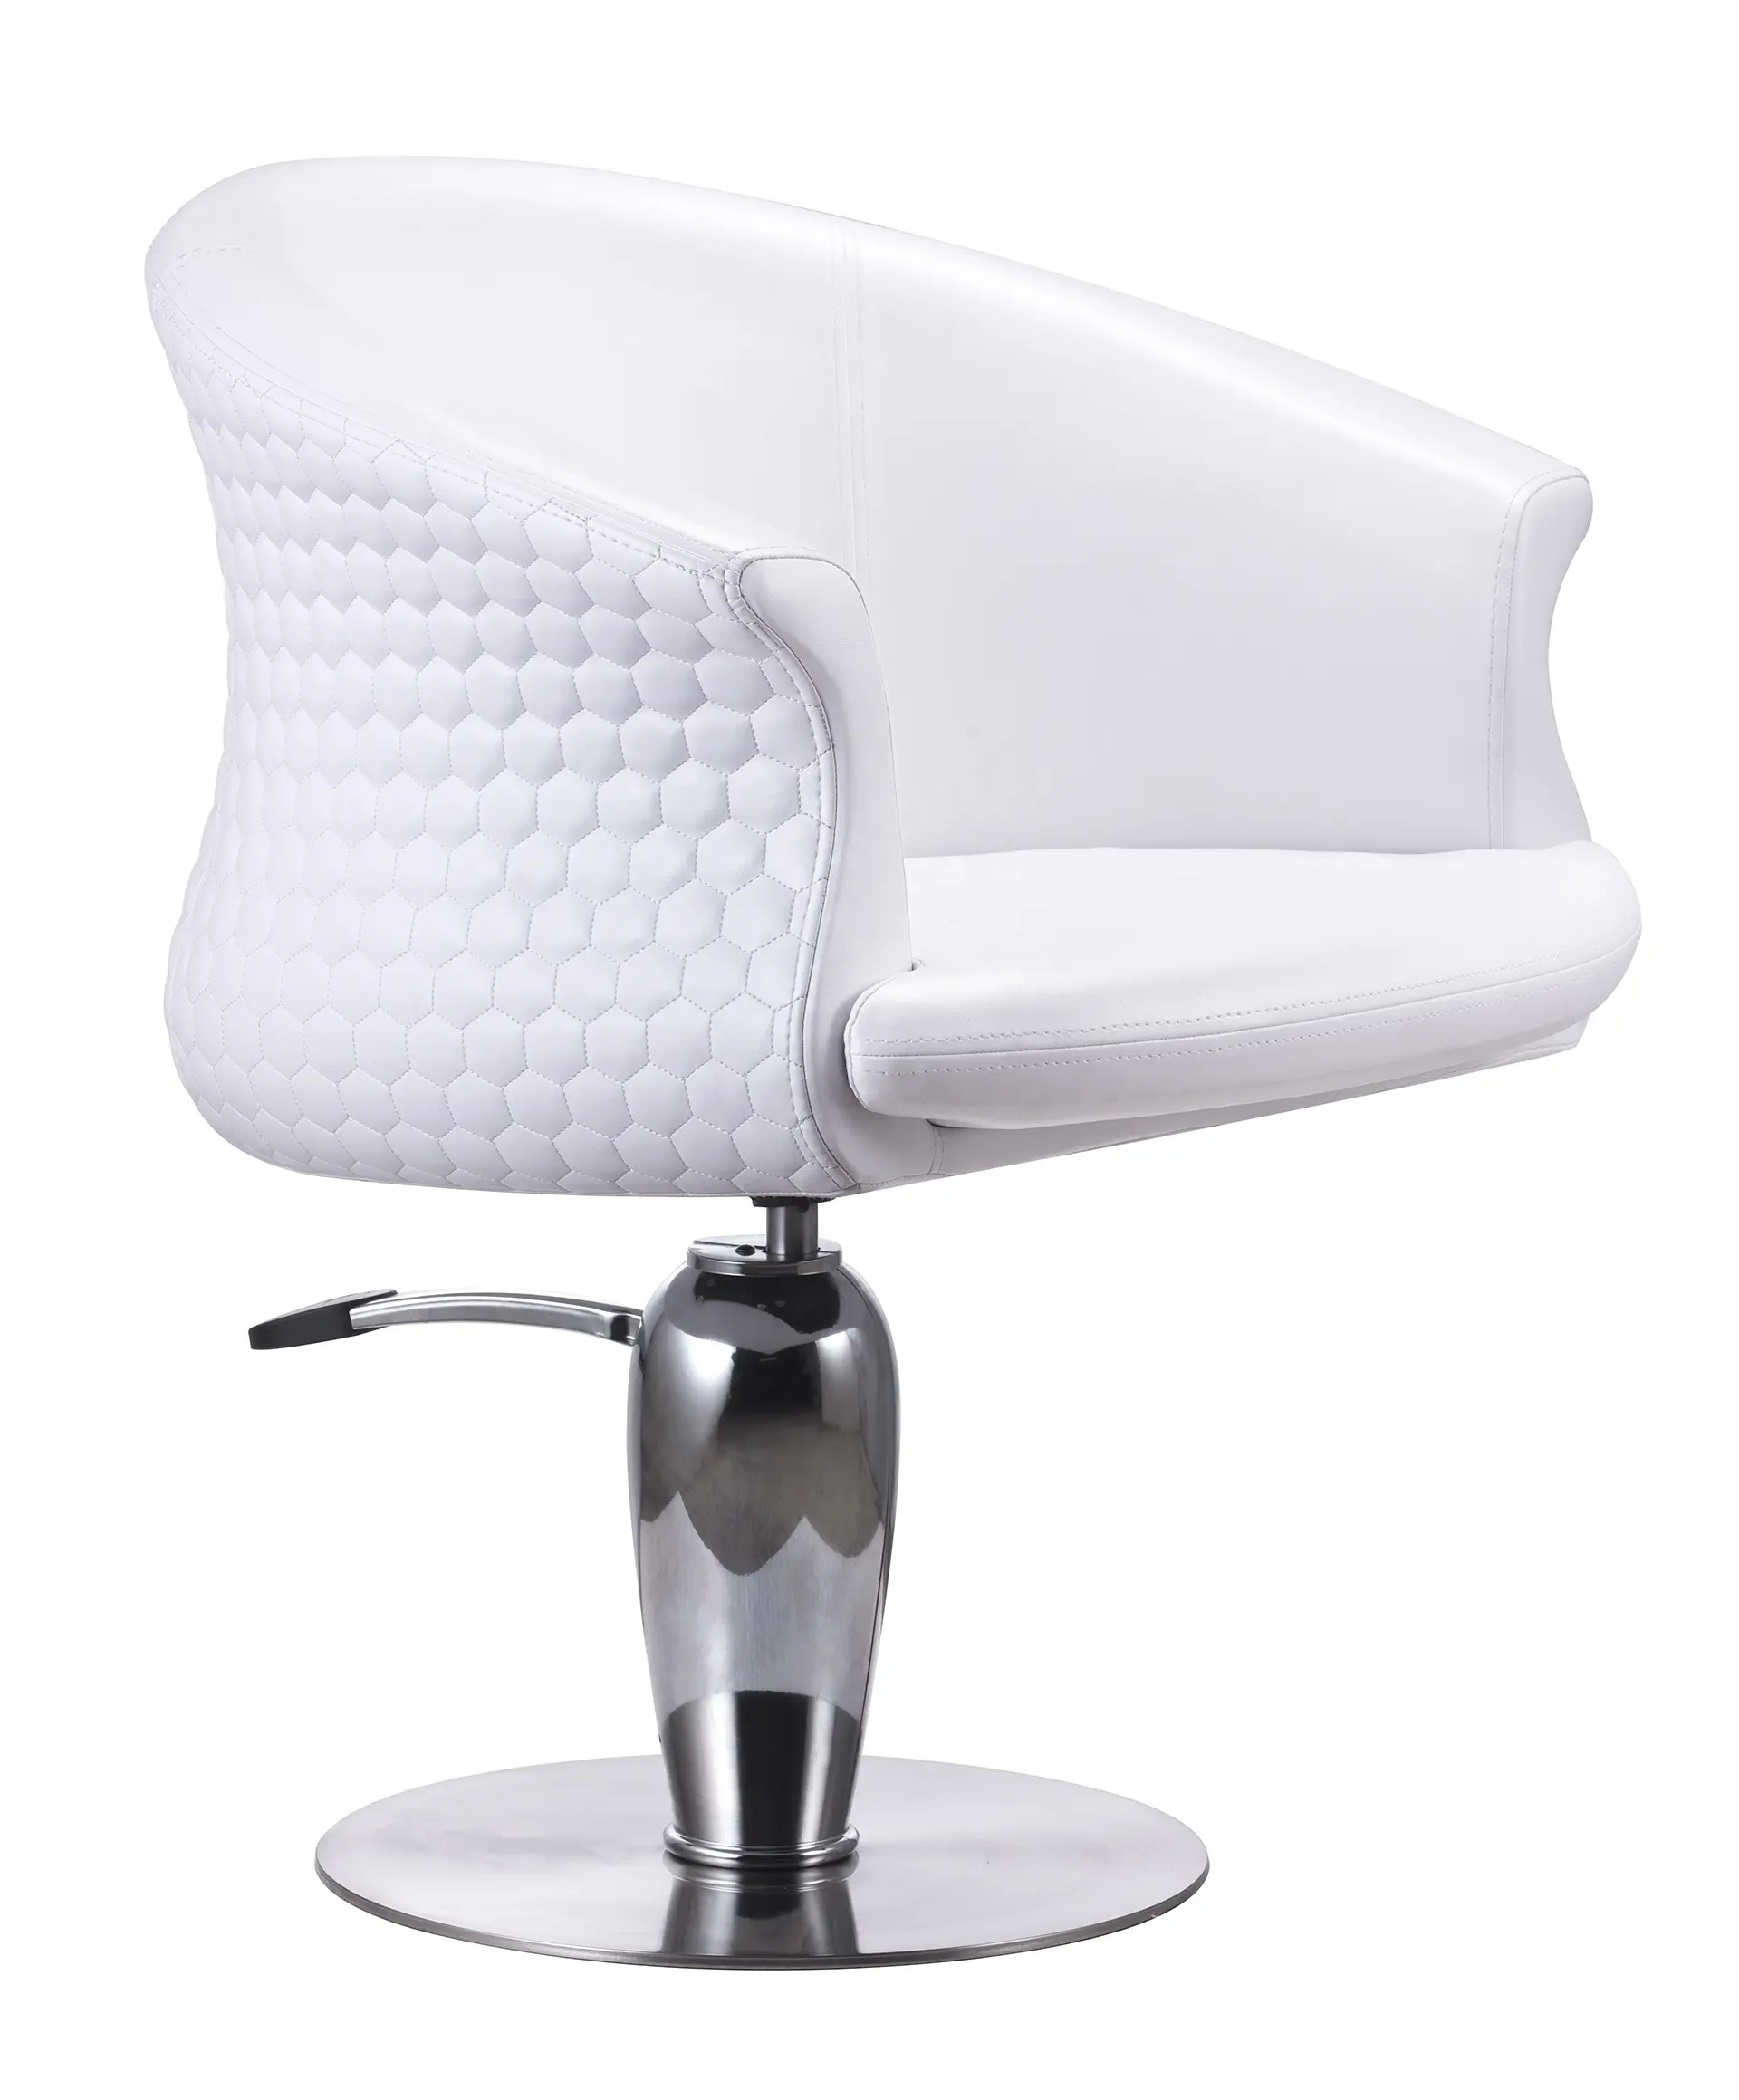 Luxe Bellezza bianco di cristallo del salone di sedia sedia del salone idraulico parrucchiere sedia per il salone di bellezza